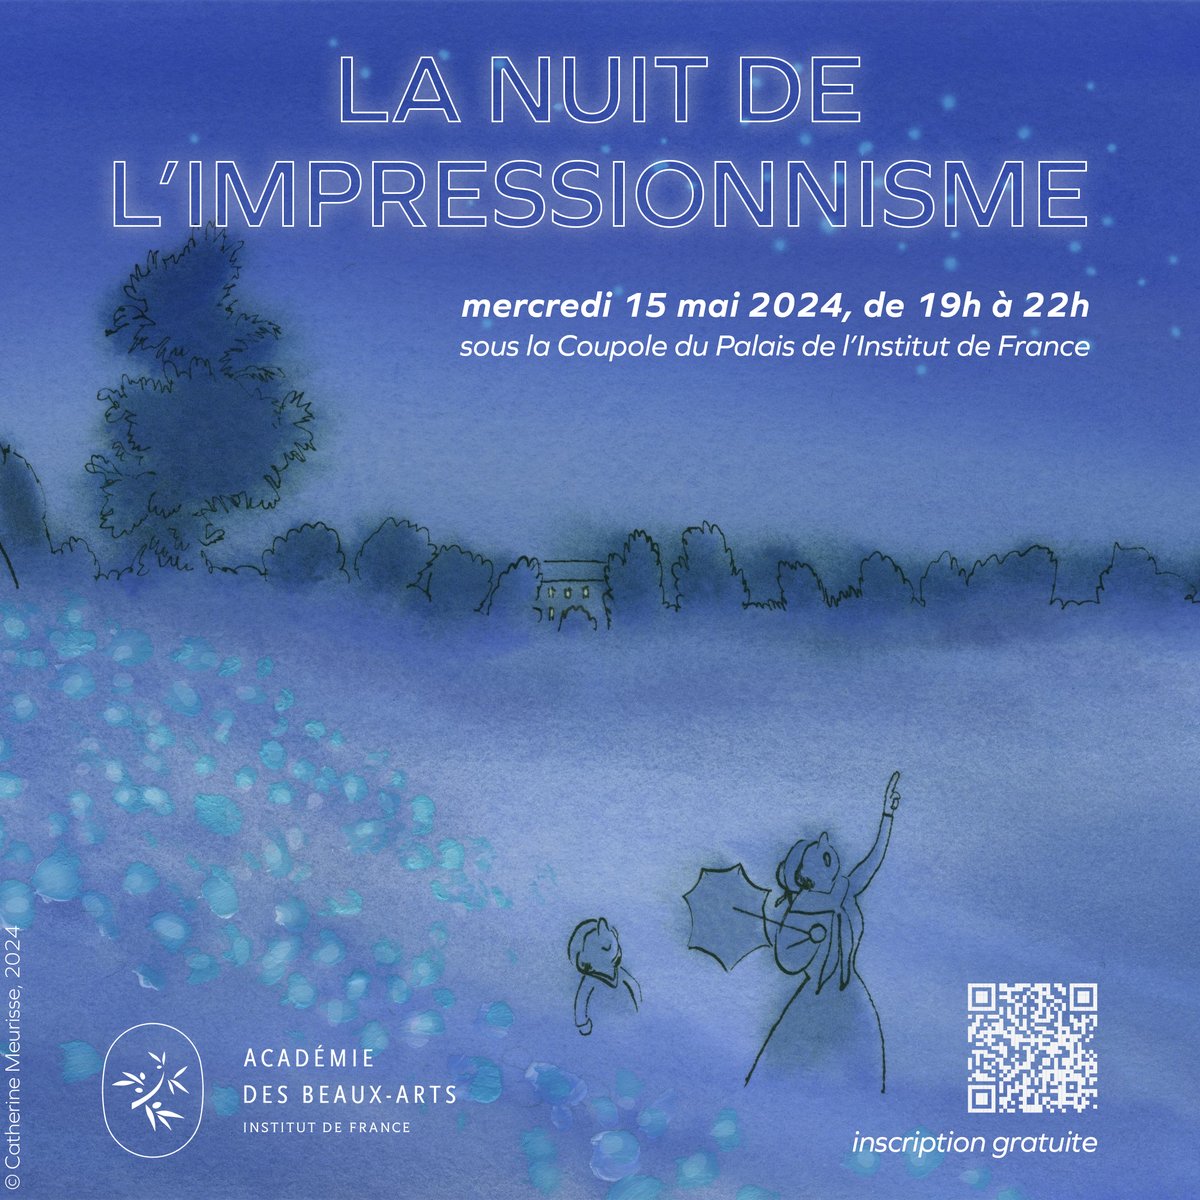 🌠Rejoignez-nous sous la Coupole du Palais de l’Institut de France le 15 mai prochain à l’occasion de 'La Nuit de l'impressionnisme' !
L'Académie des beaux-arts organise de 19h à 22h une soirée d’échange autour de l’émergence de ce moment unique de l’histoire de l’art.